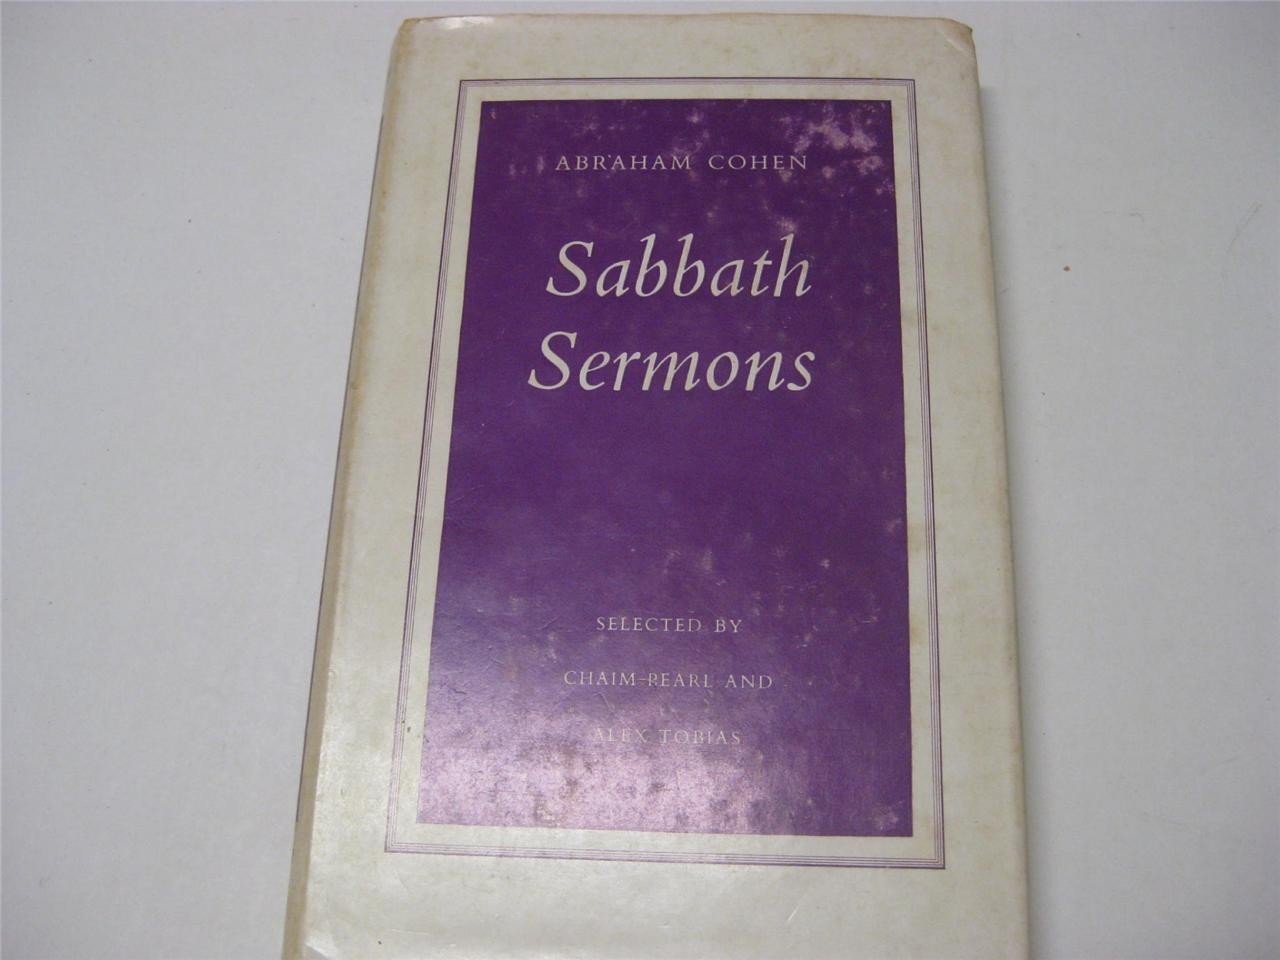 Sabbath sermons by Abraham Cohen        London : Soncino Press, 1960